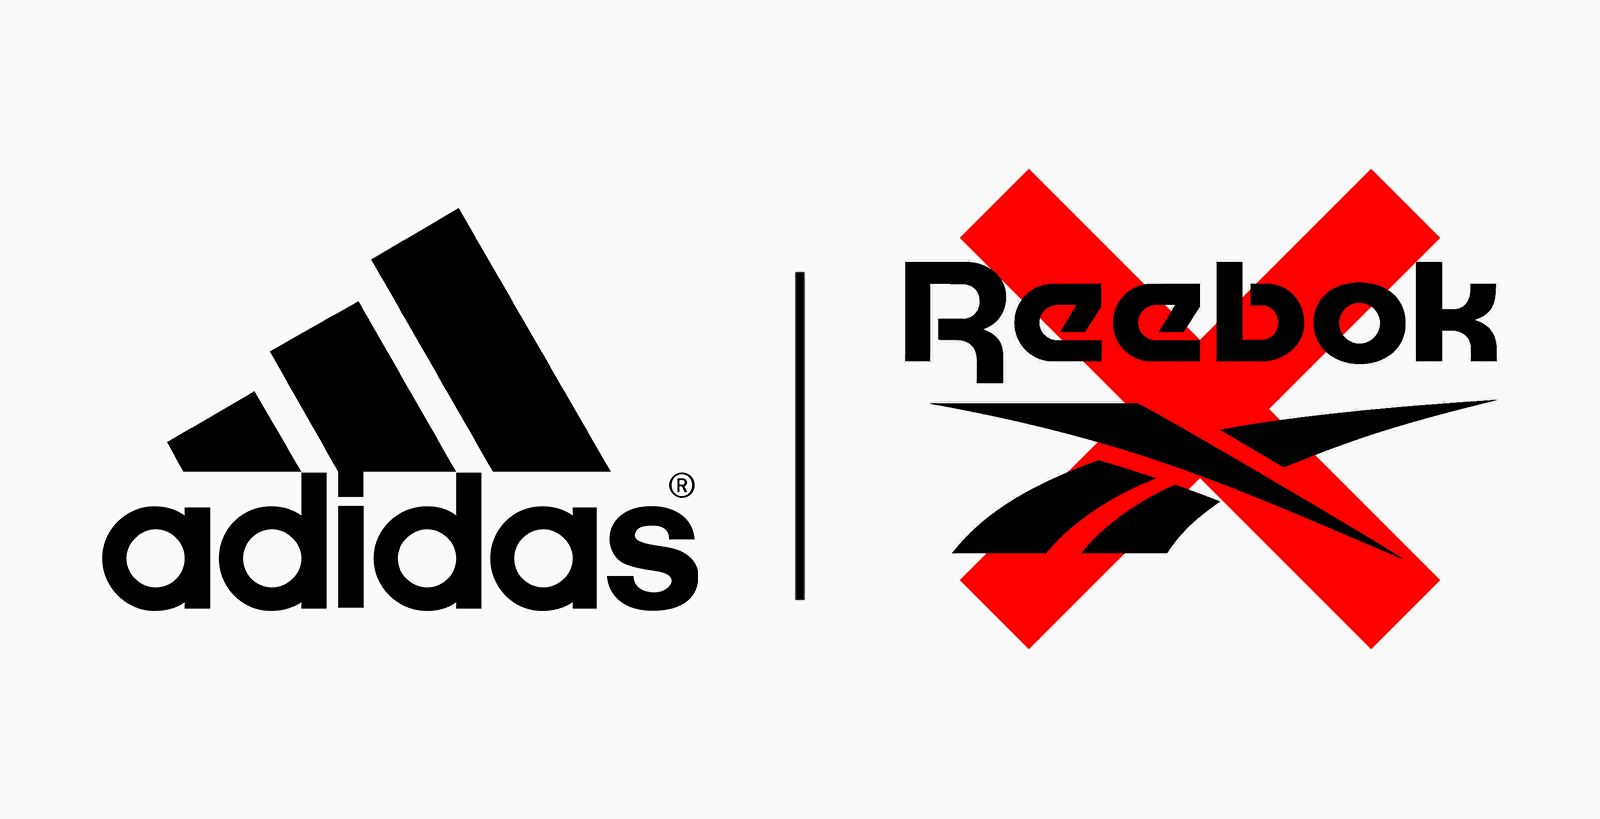 Should Adidas Sell Reebok?